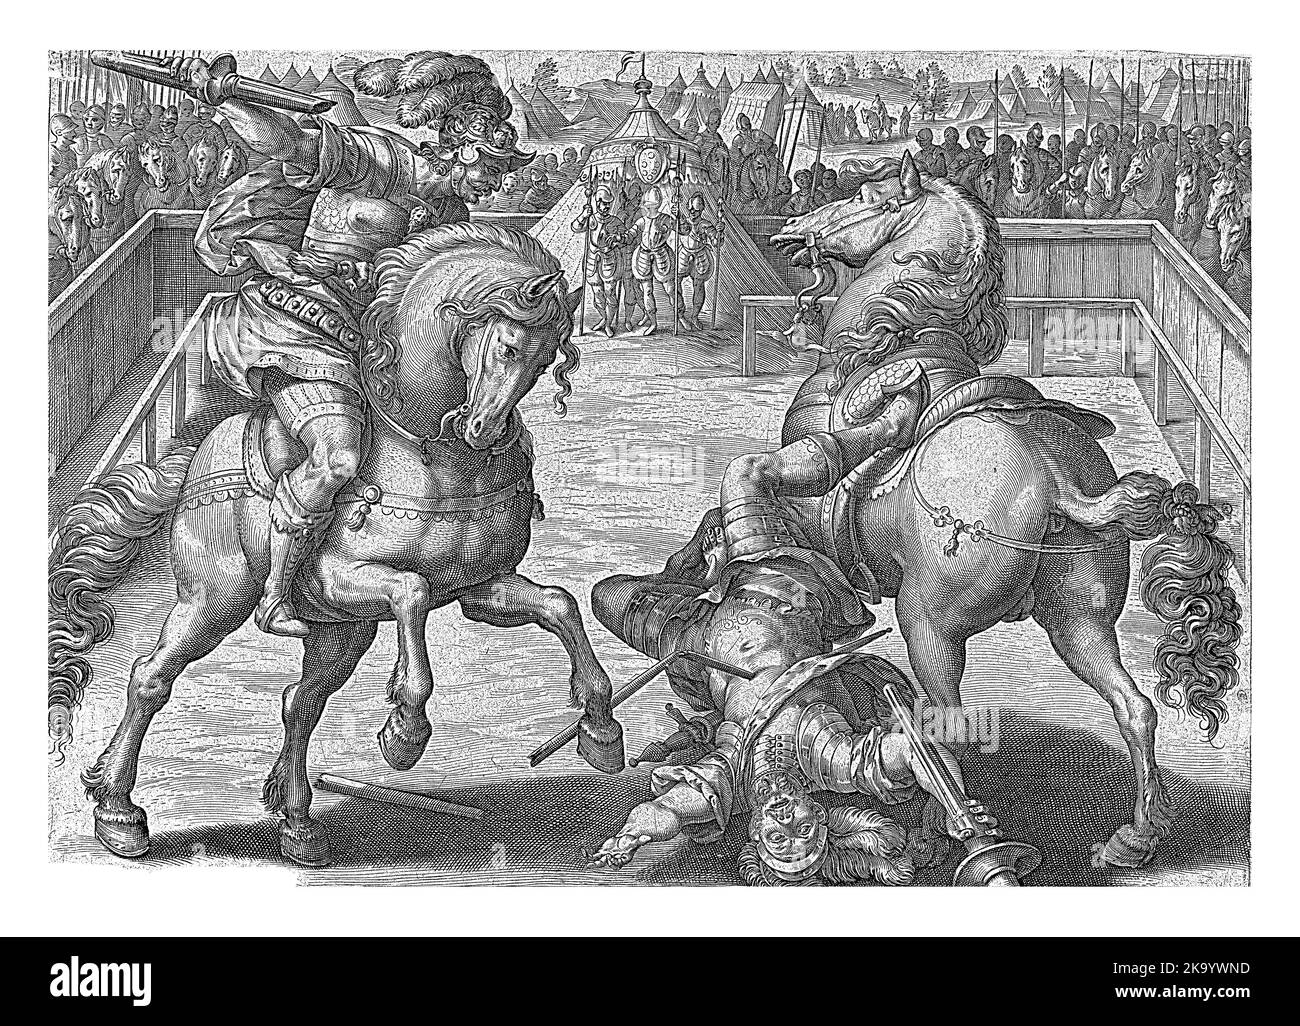 Giovanni de' Medici hat gerade seinen Gegner mit seiner Lanze vom Pferd geschlagen. Die beiden befinden sich in einem Zaun, umgeben von vielen Reitern. Stockfoto